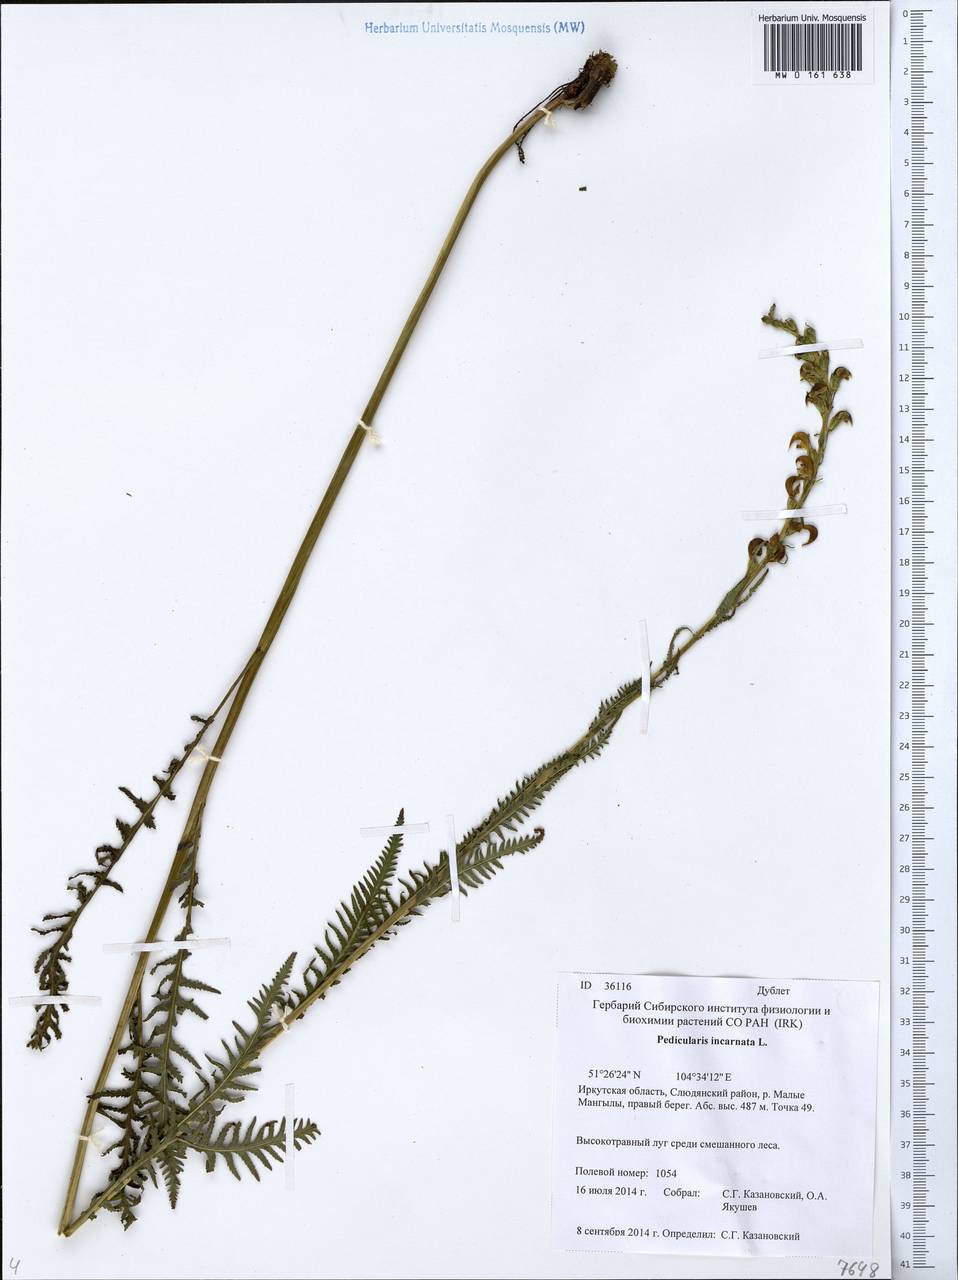 Pedicularis incarnata L., Siberia, Baikal & Transbaikal region (S4) (Russia)